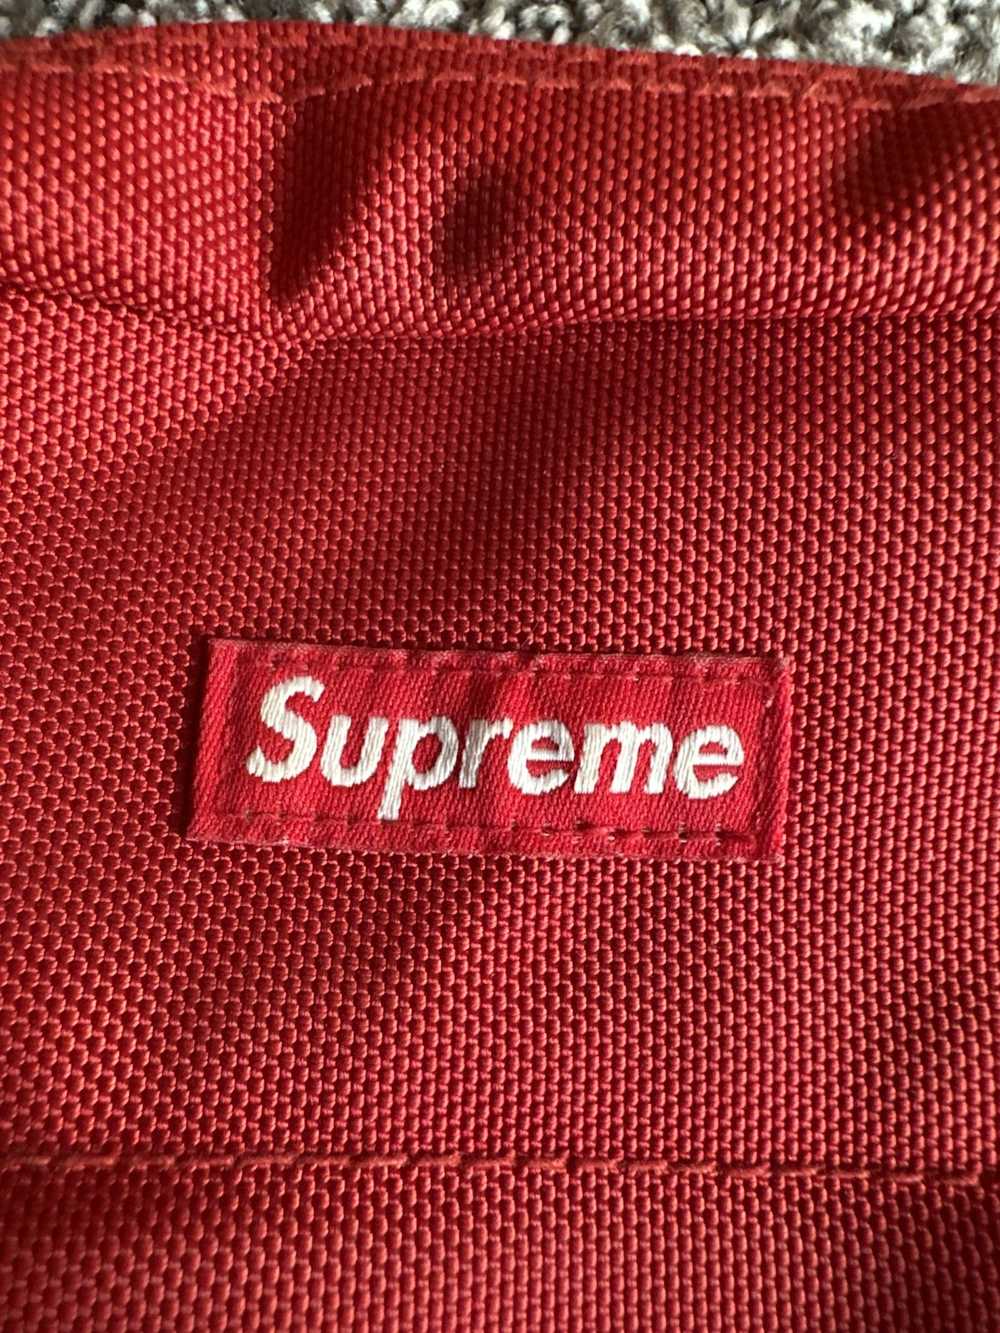 Supreme Supreme Shoulder Bag SS18 - image 2